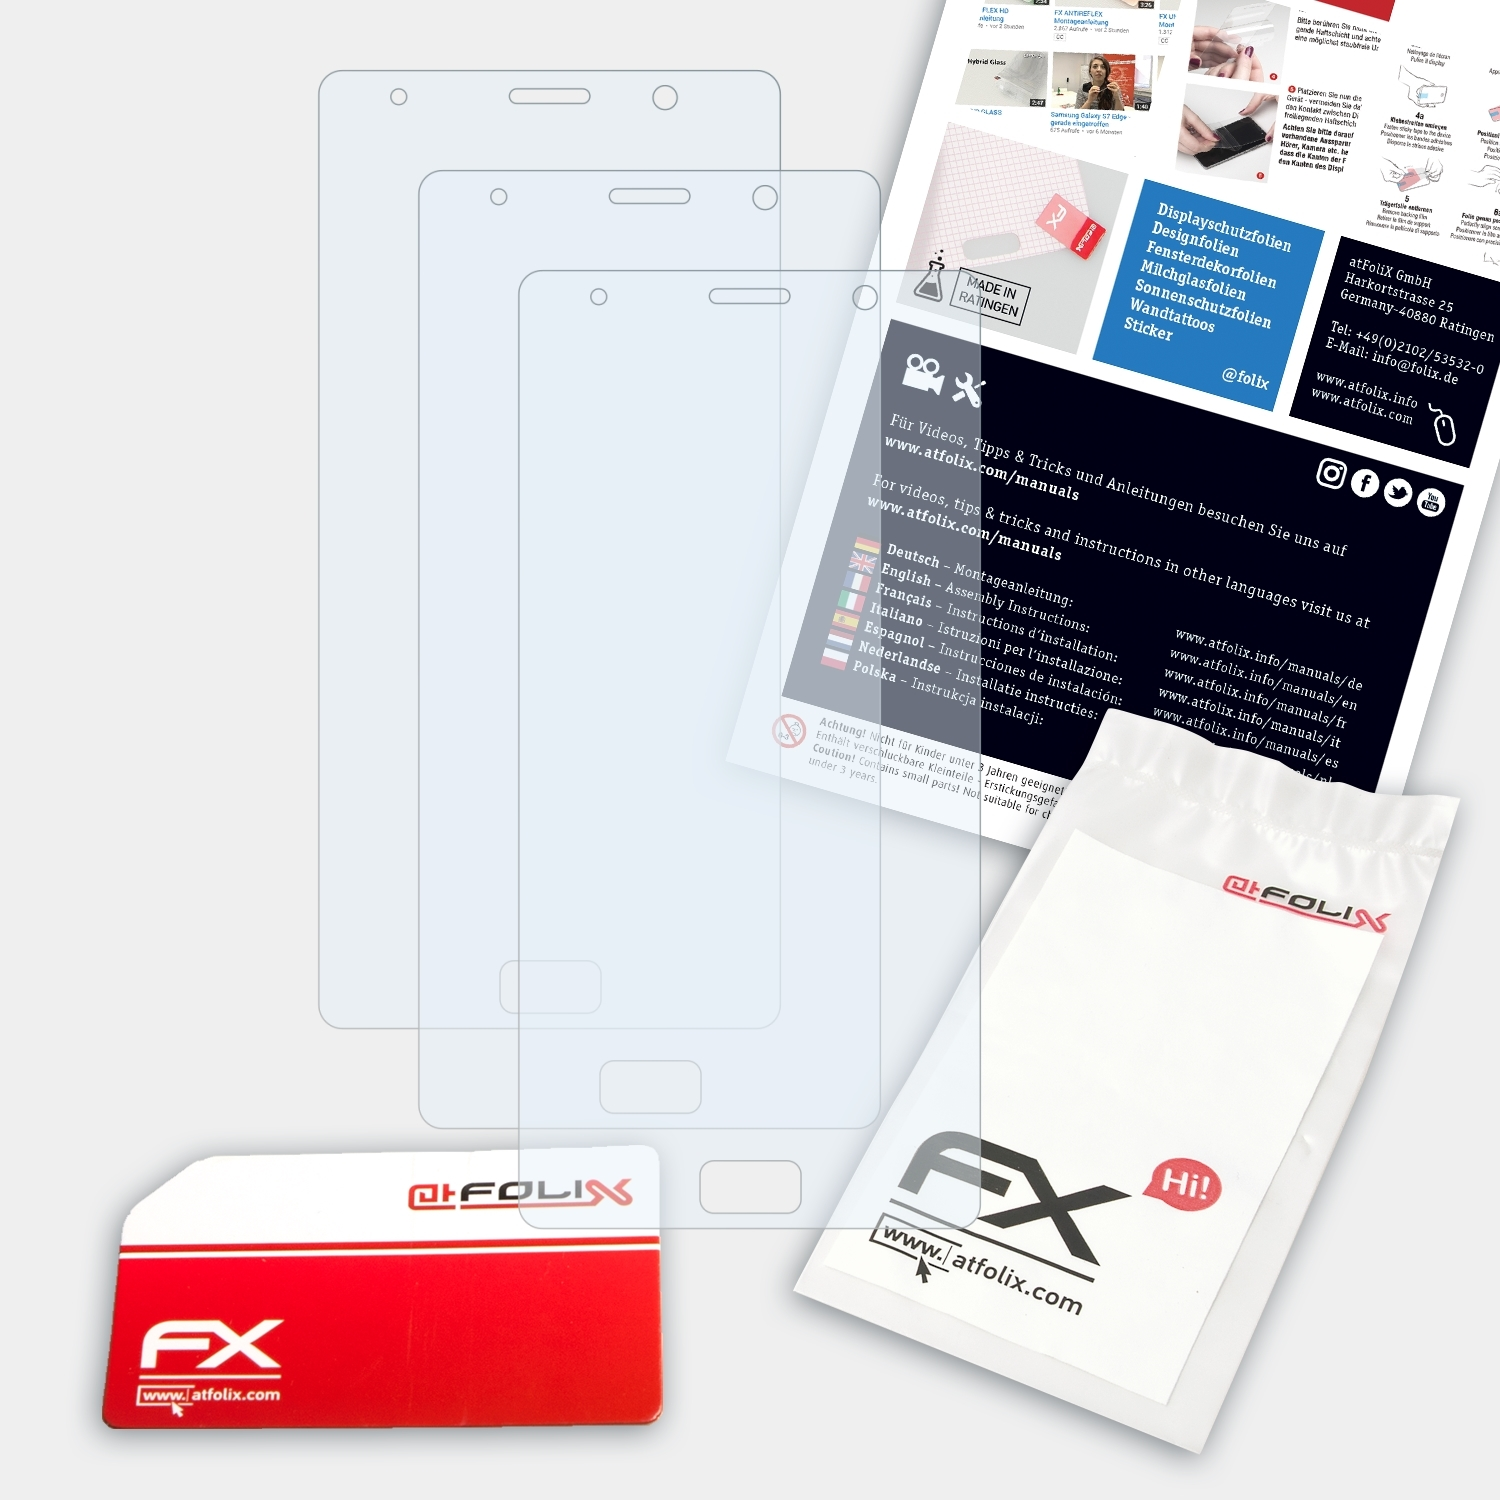 ATFOLIX 3x FX-Clear Xenium Philips X598) Displayschutz(für